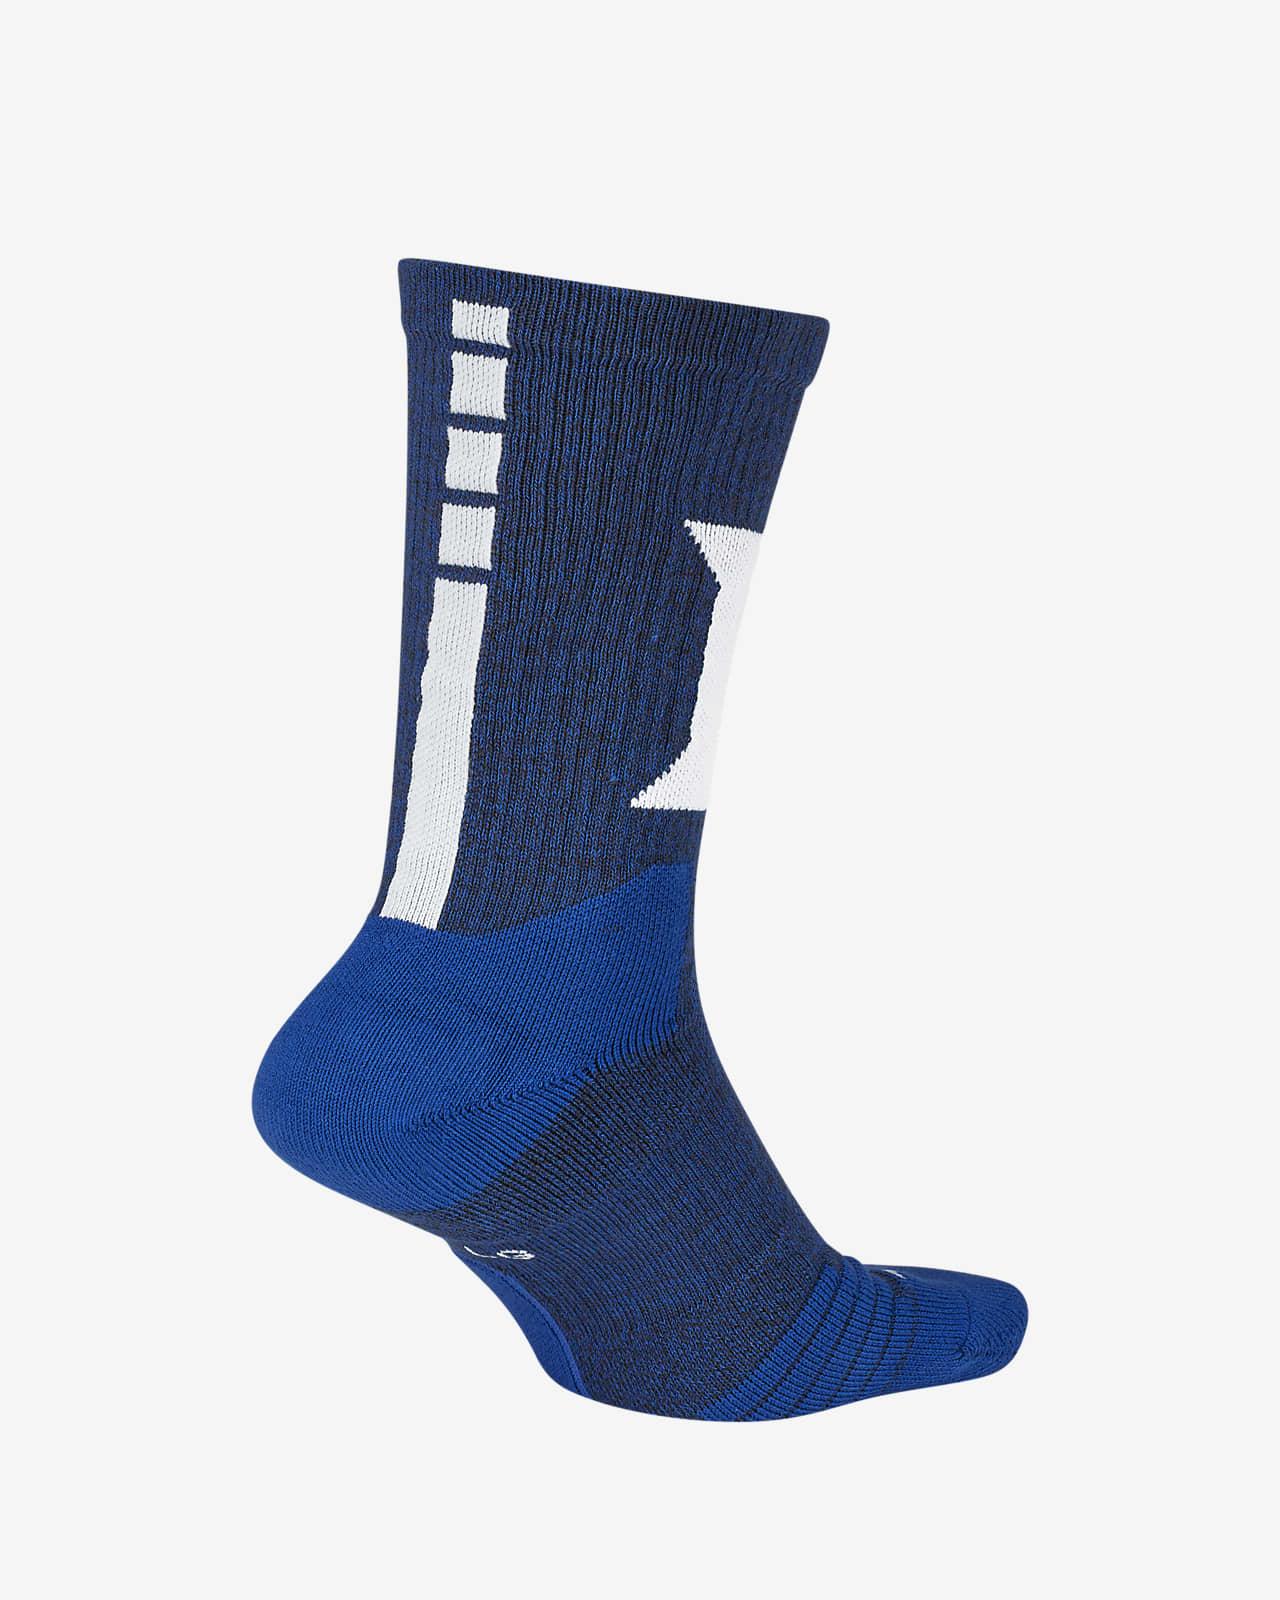 blue socks nike